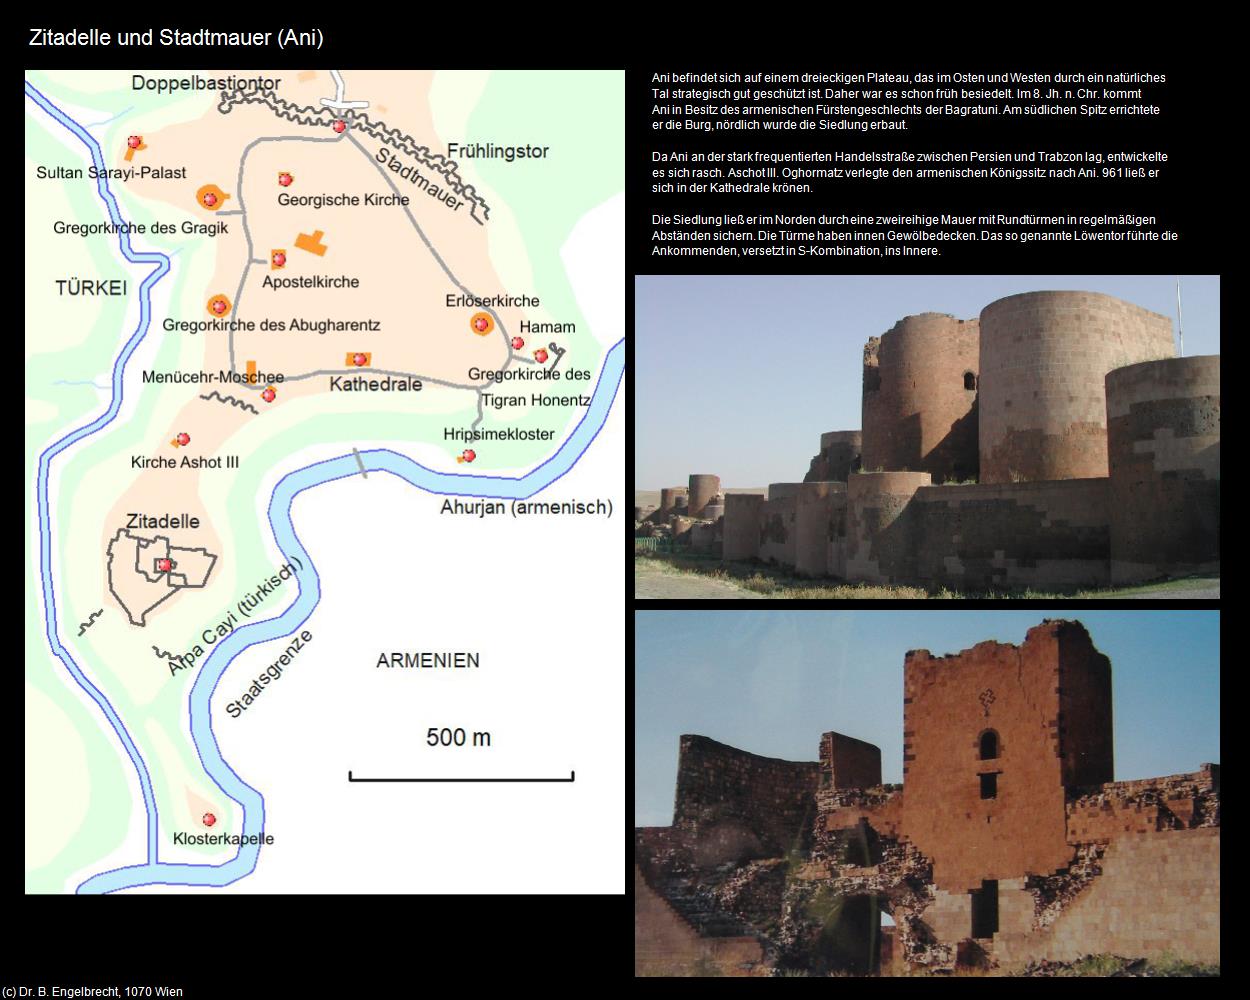 Zitadelle und Stadtmauer (Ani) in TÜRKEI